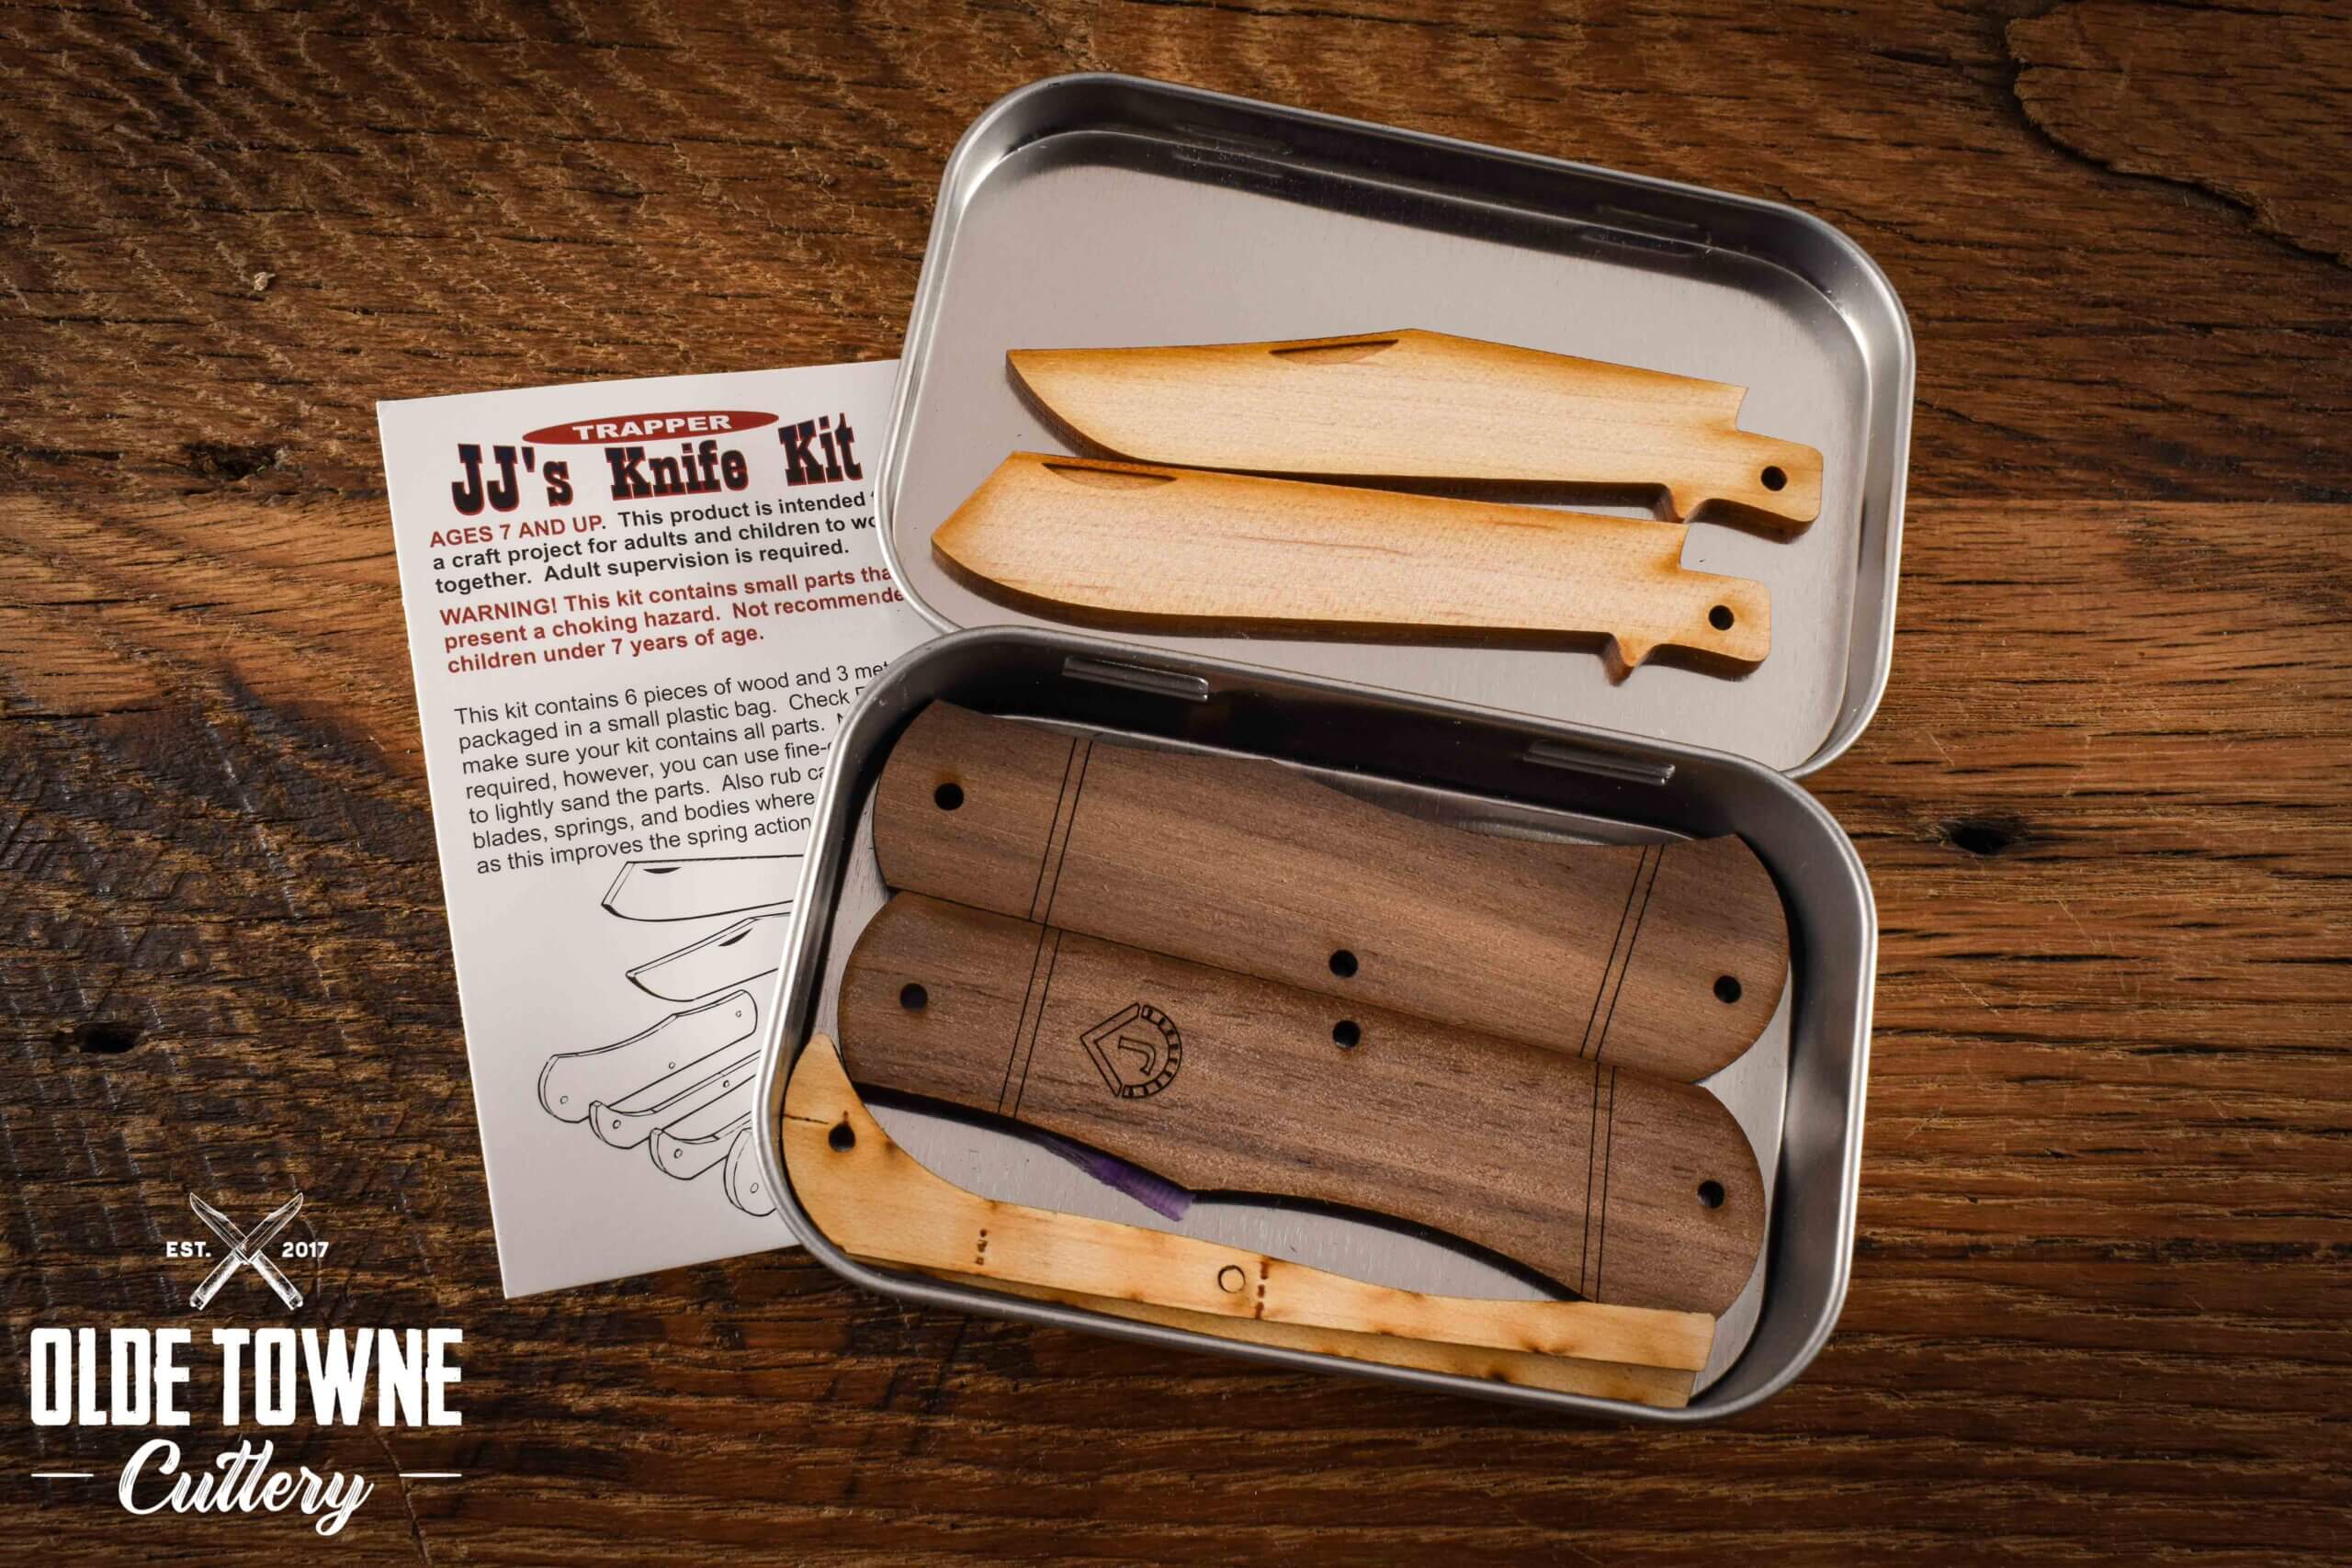 Wooden Knife Kit JJ2 Trapper